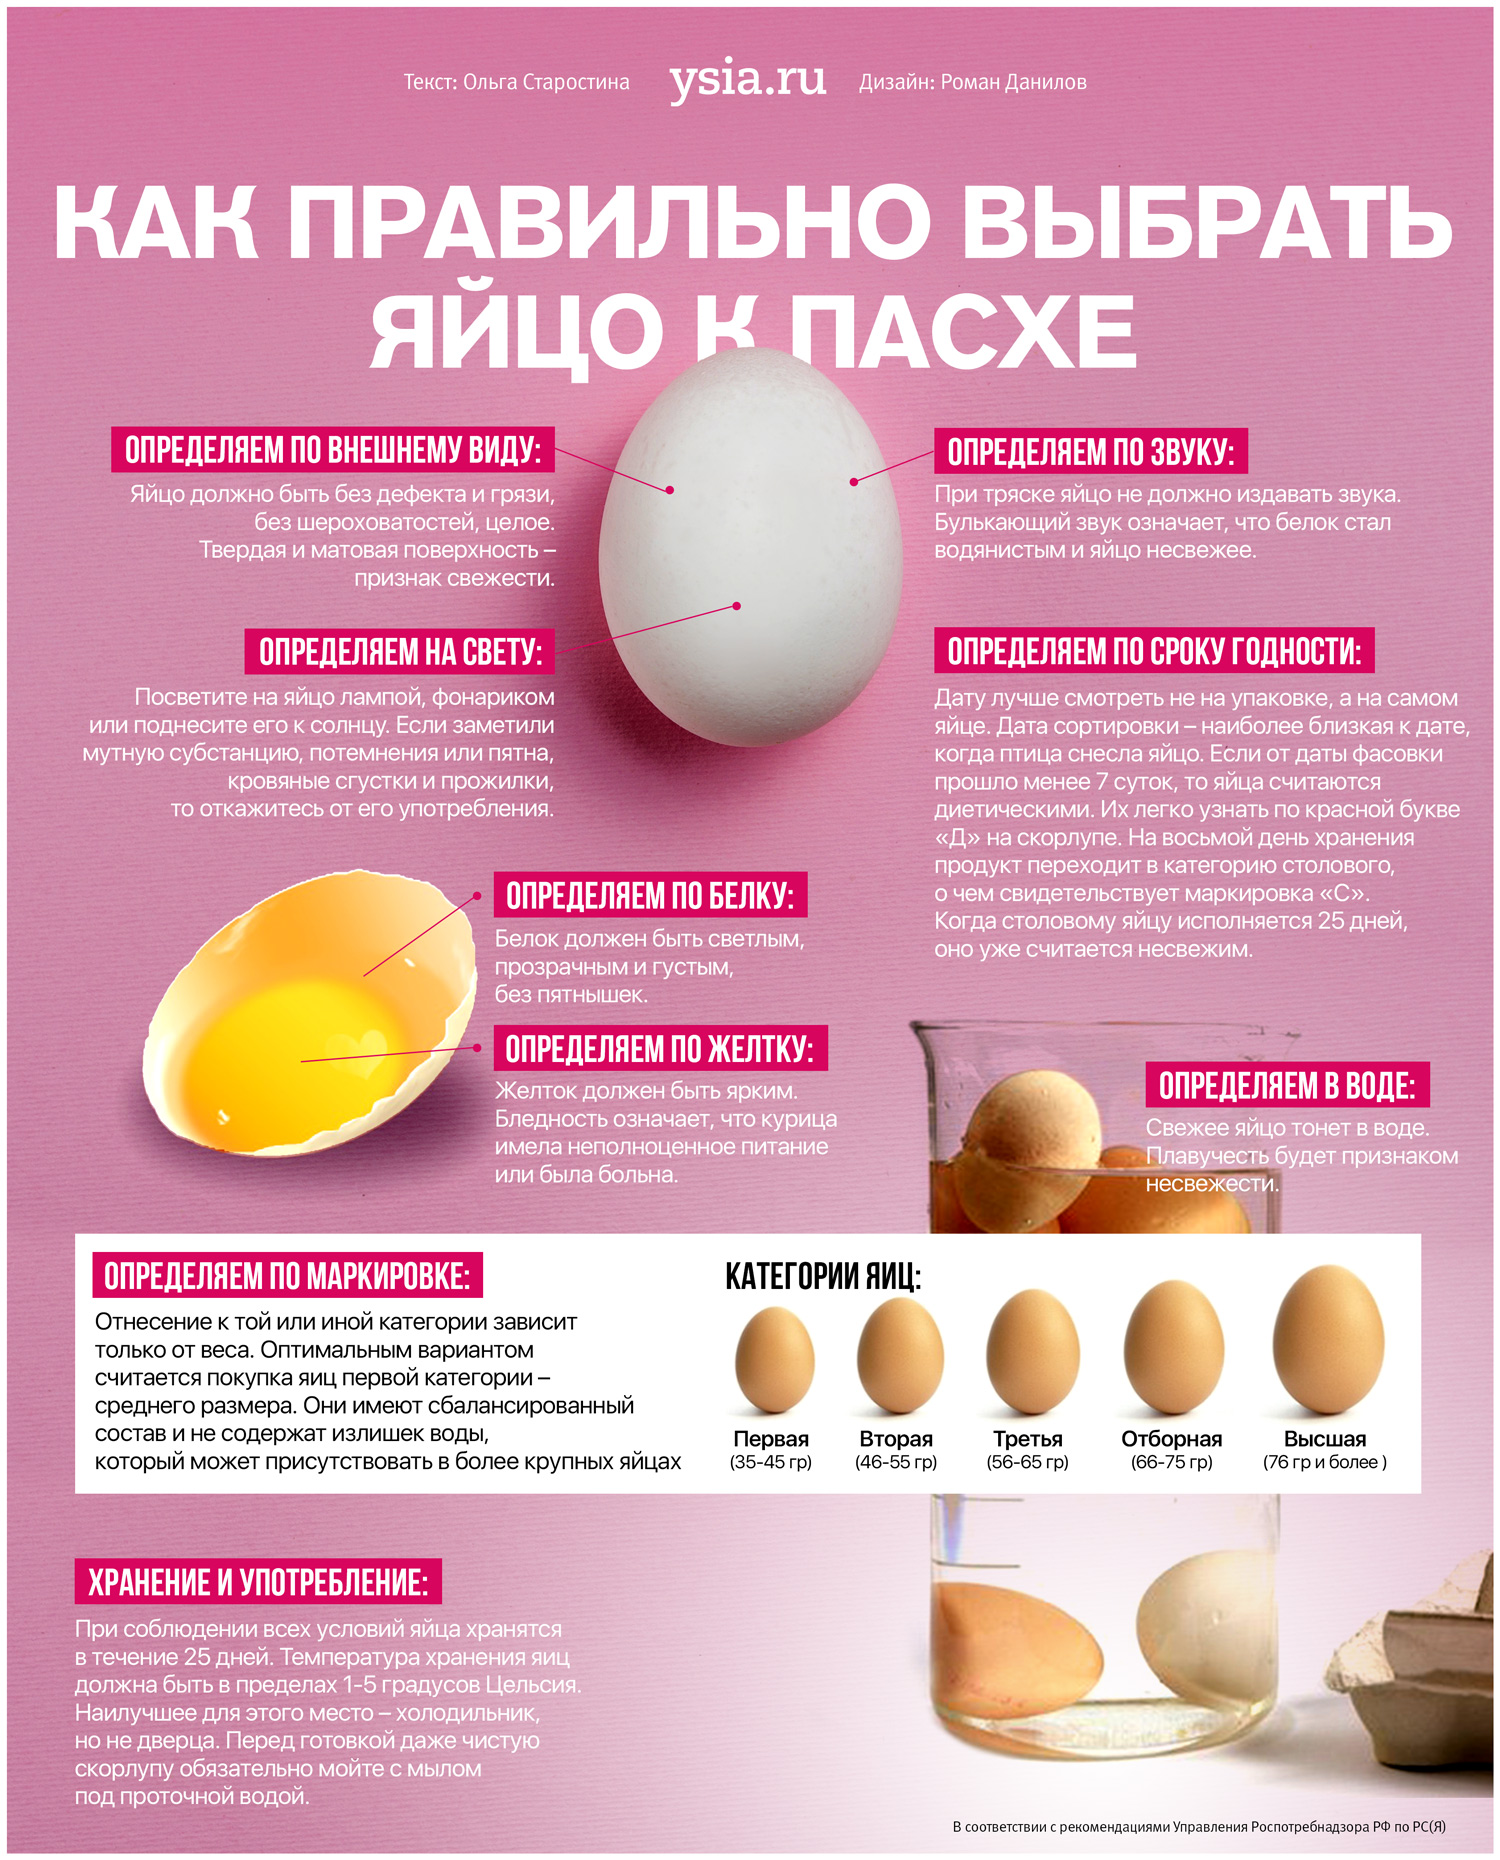 Скажи яичко. Как выбрать яйца. Как правильно выбирать яйца. Инфографика яйцо. Категории яиц куриных.